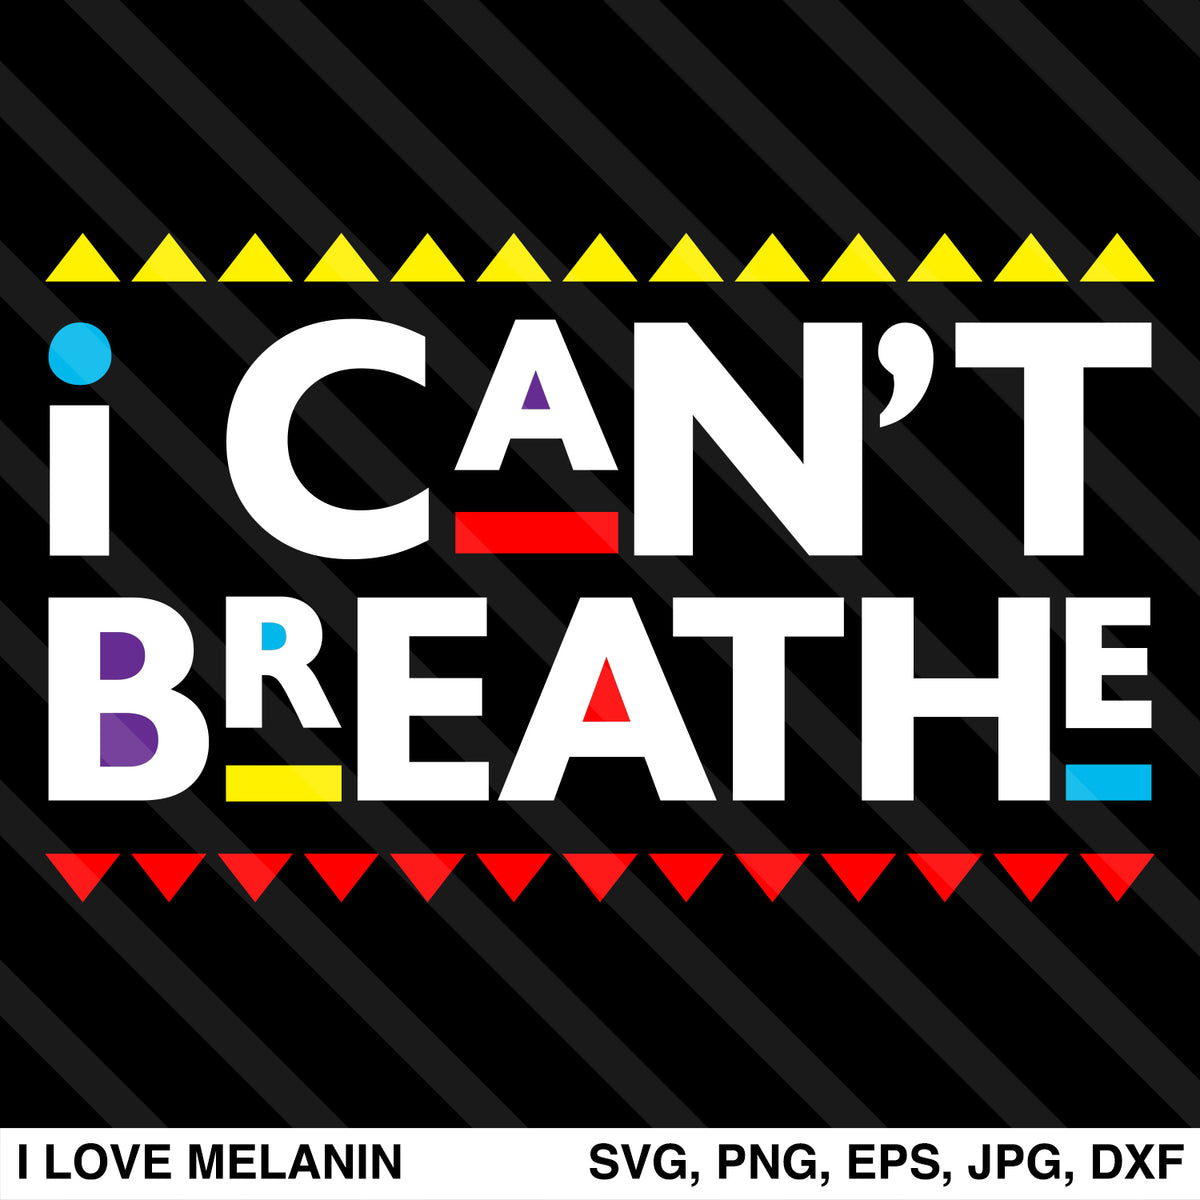 Download I Can't Breathe SVG - I Love Melanin